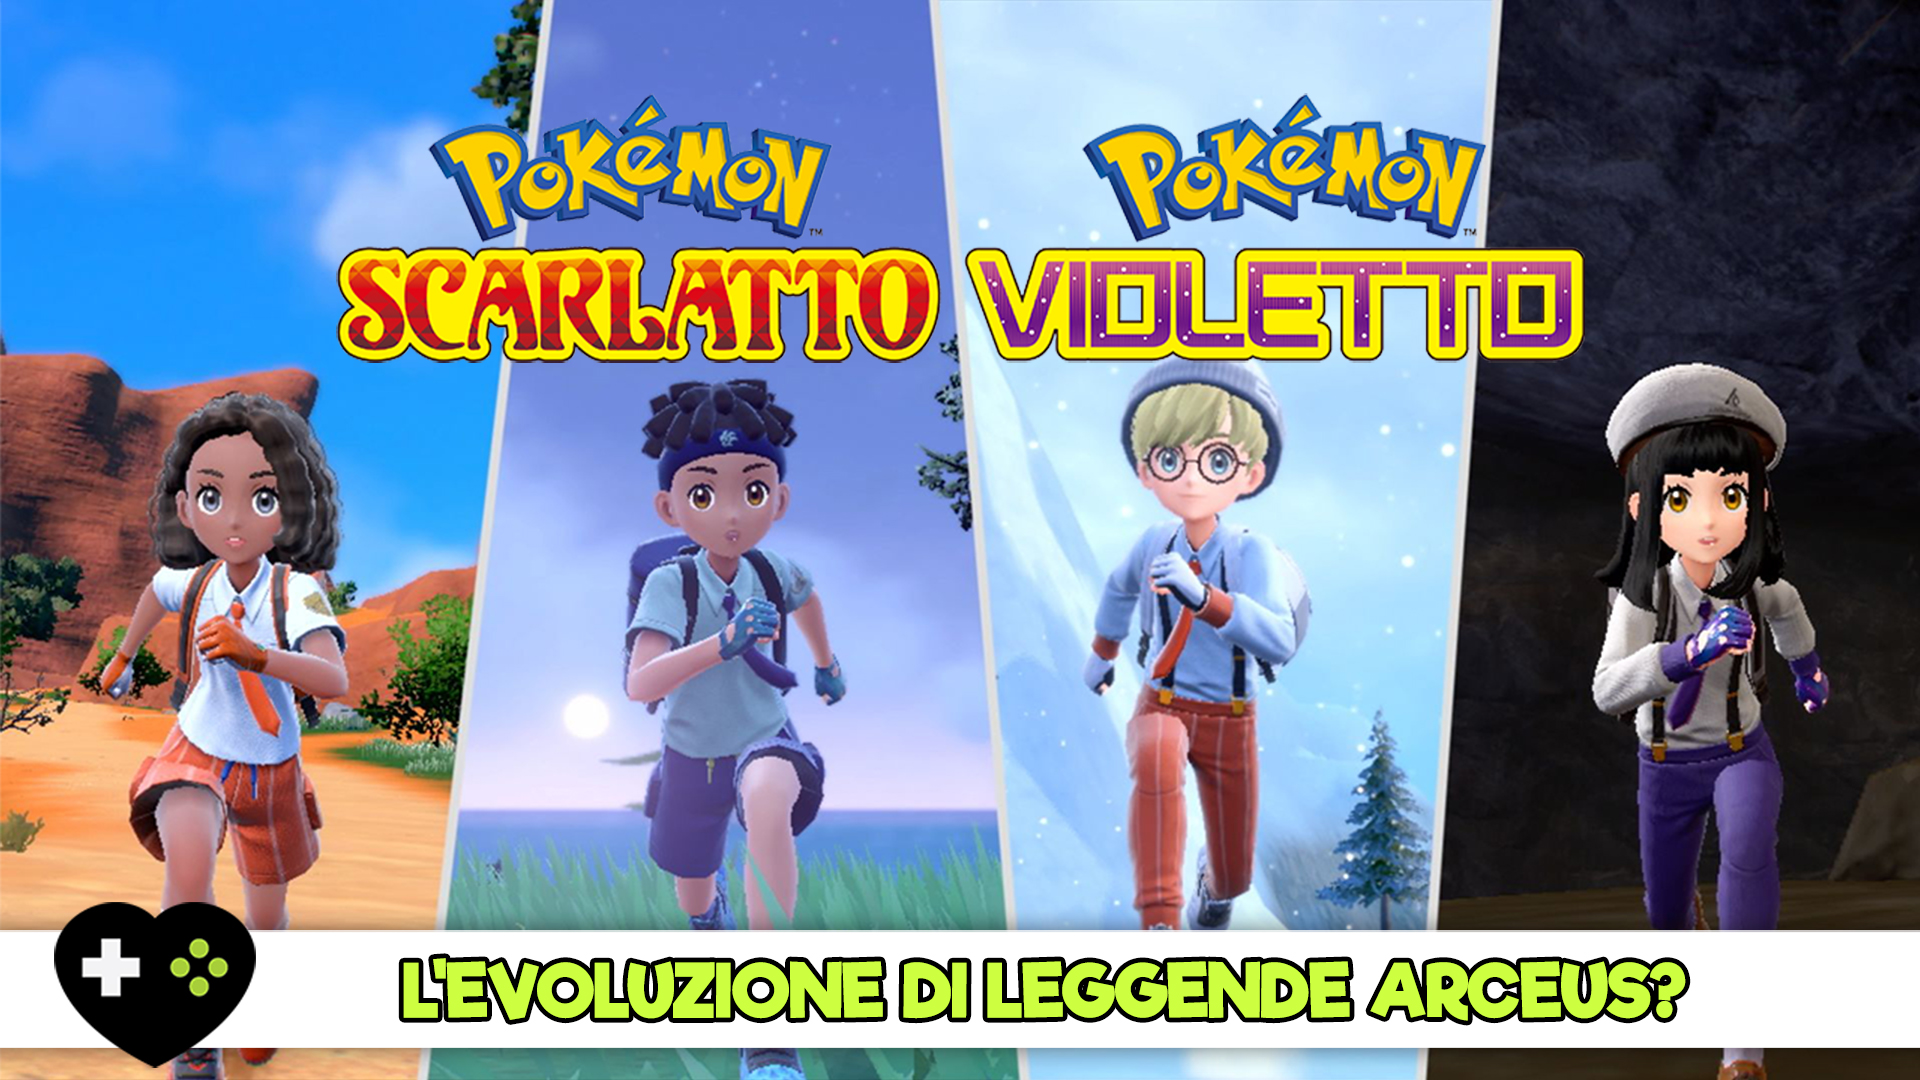 Pokémon Scarlatto e Violetto, saranno l'evoluzione di Leggende Arceus?